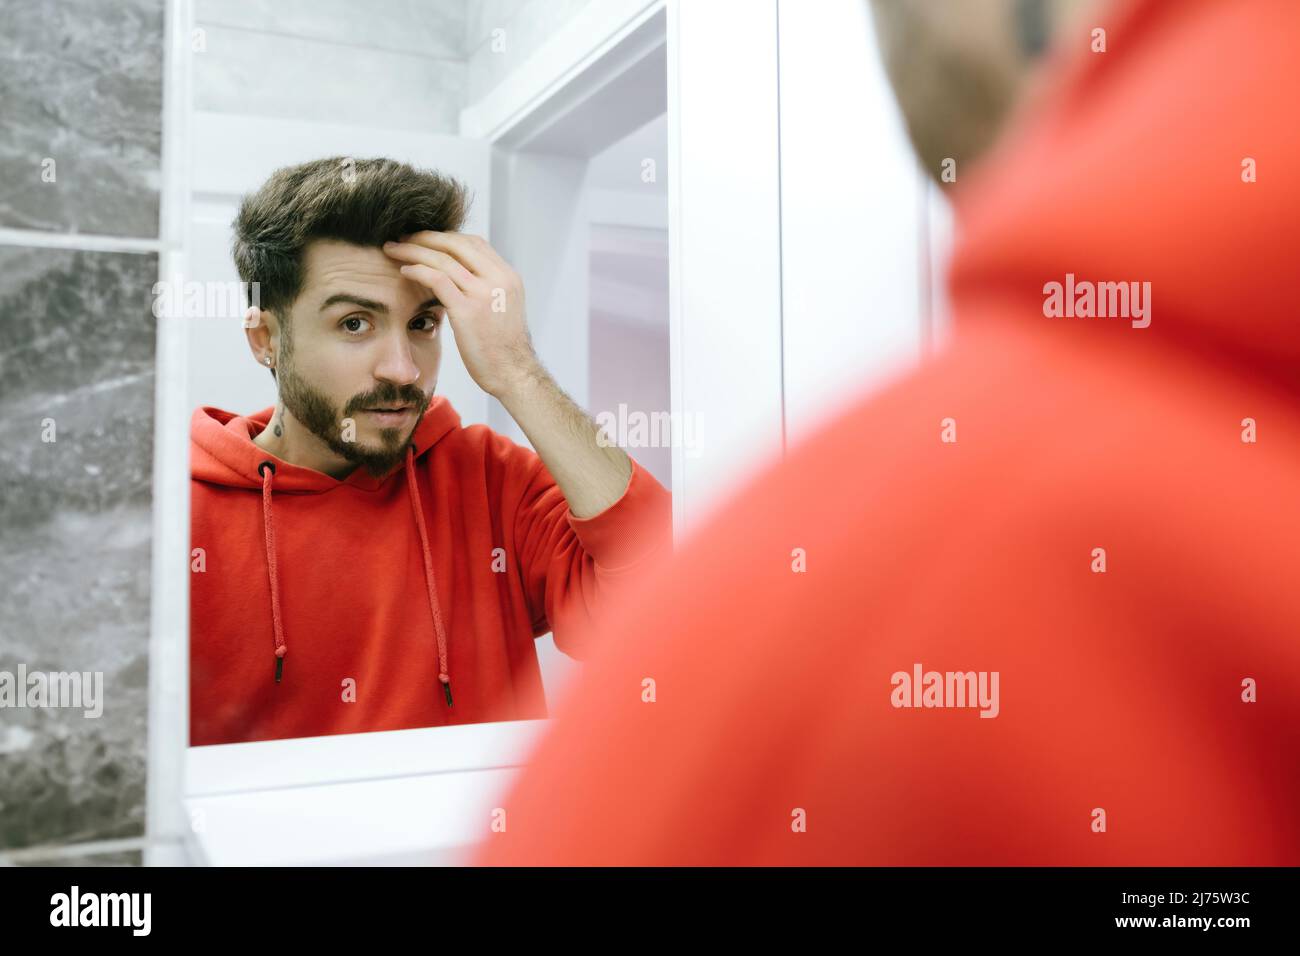 Vor dem Spiegel posiert der junge Mann, der seine Hände an sein Haar nimmt, während sich ein erwachsener Mann darauf vorbereitet, ins Badezimmer zu gehen Stockfoto